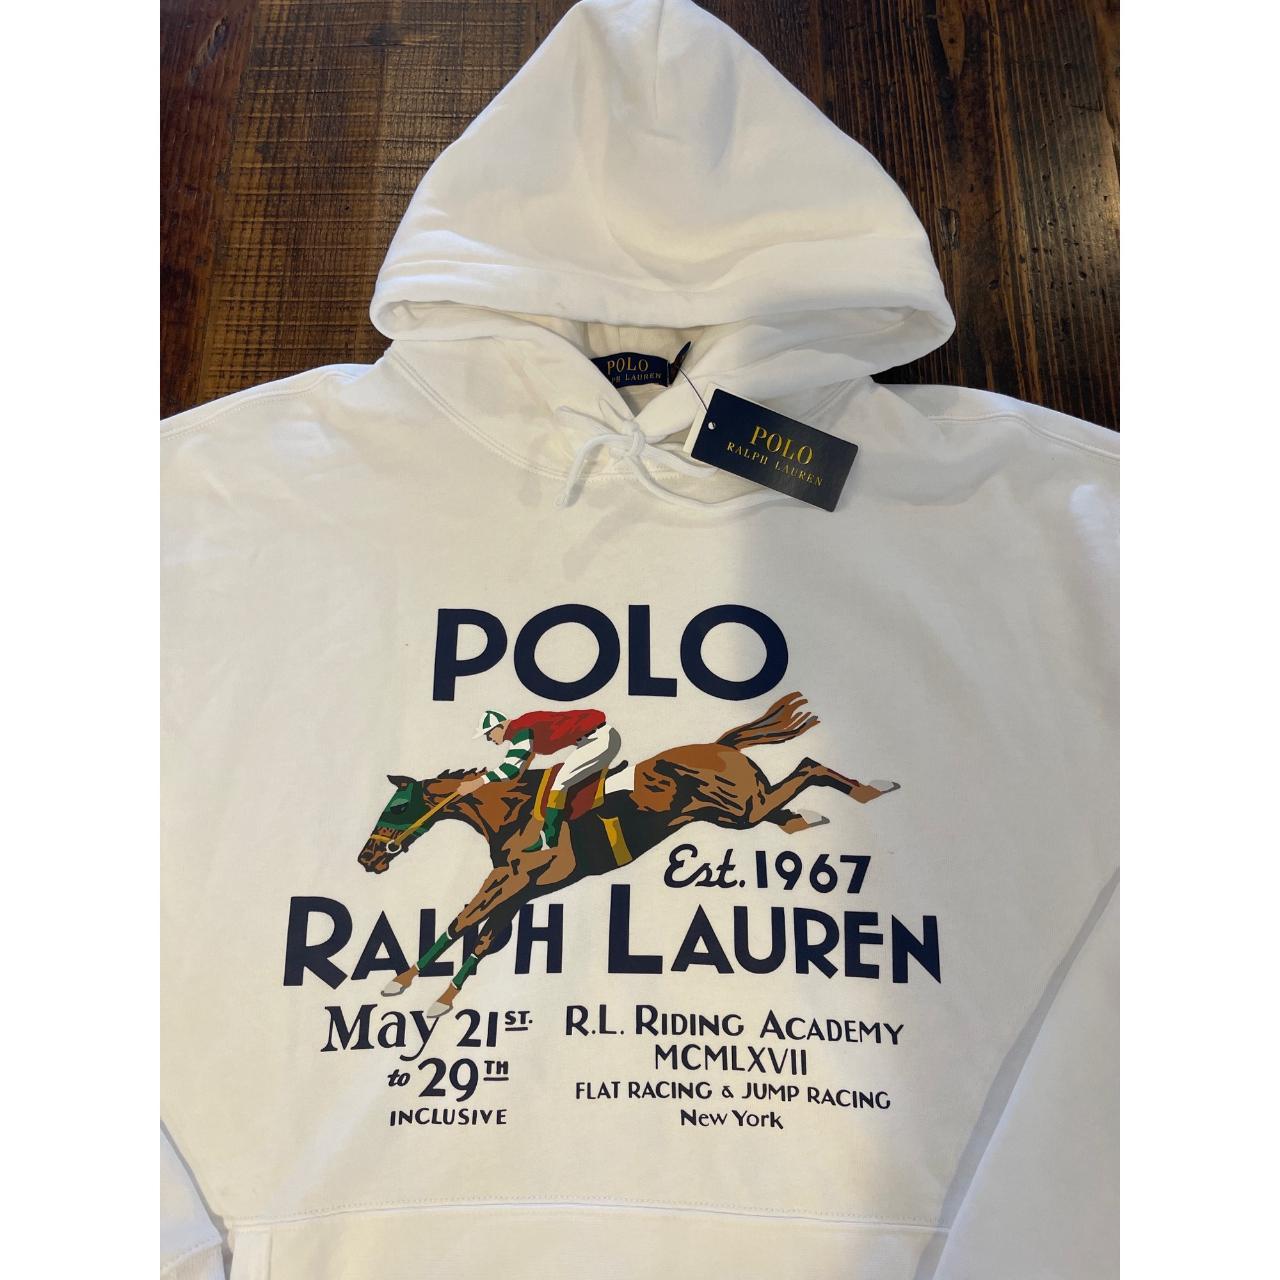 NWT Polo Ralph Lauren WHITE EQUESTRIAN RIDING... - Depop